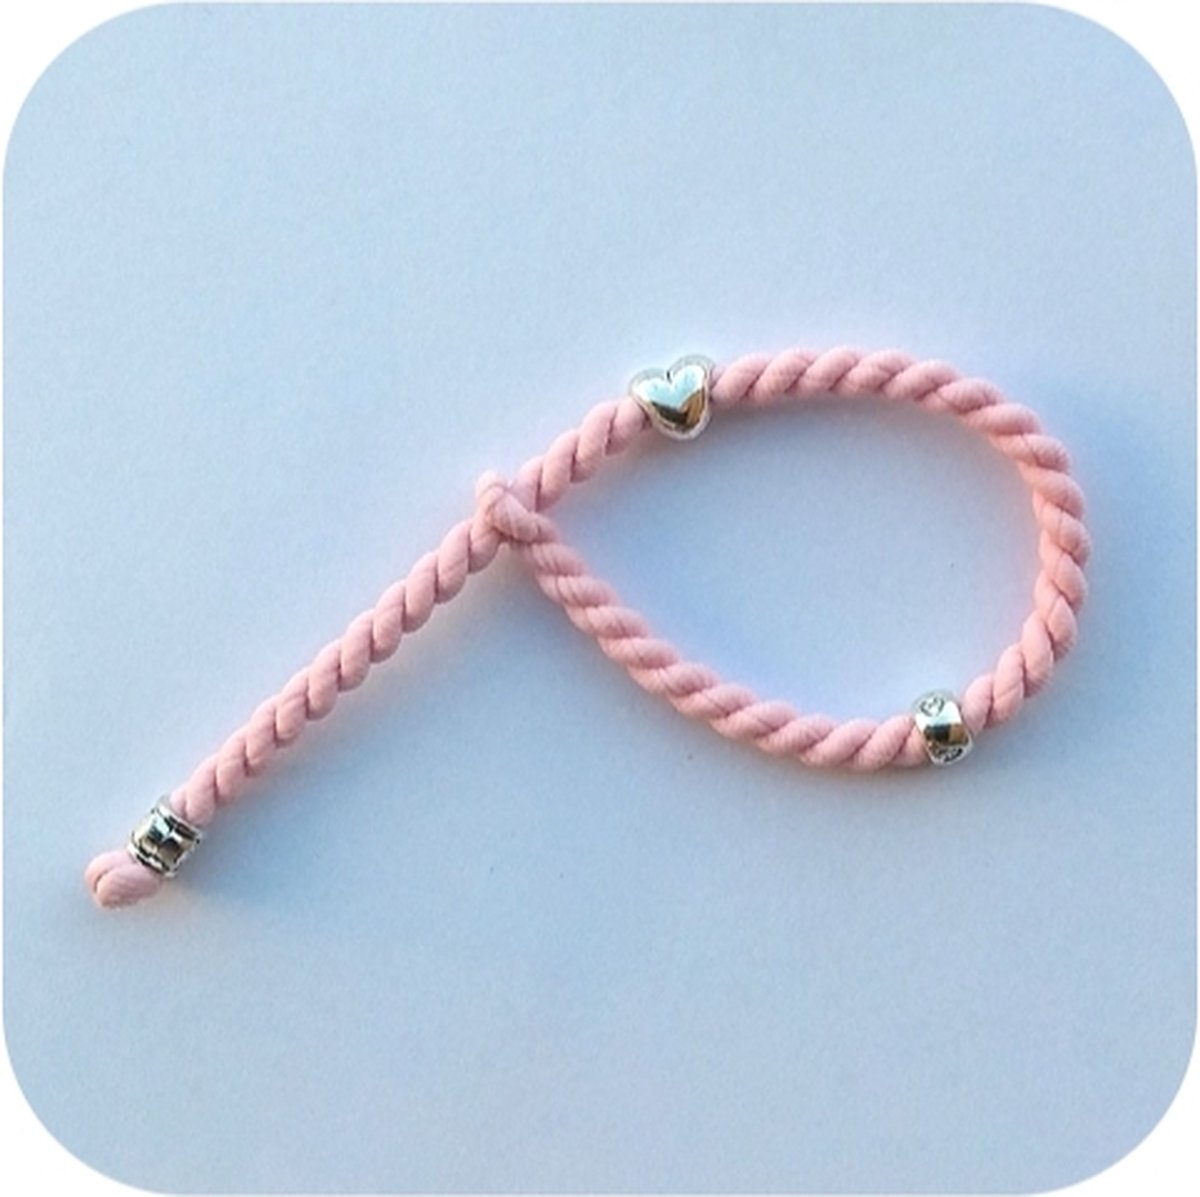 Haarelastiek, enkelbandje, armbandje, licht roze met bedeltjes